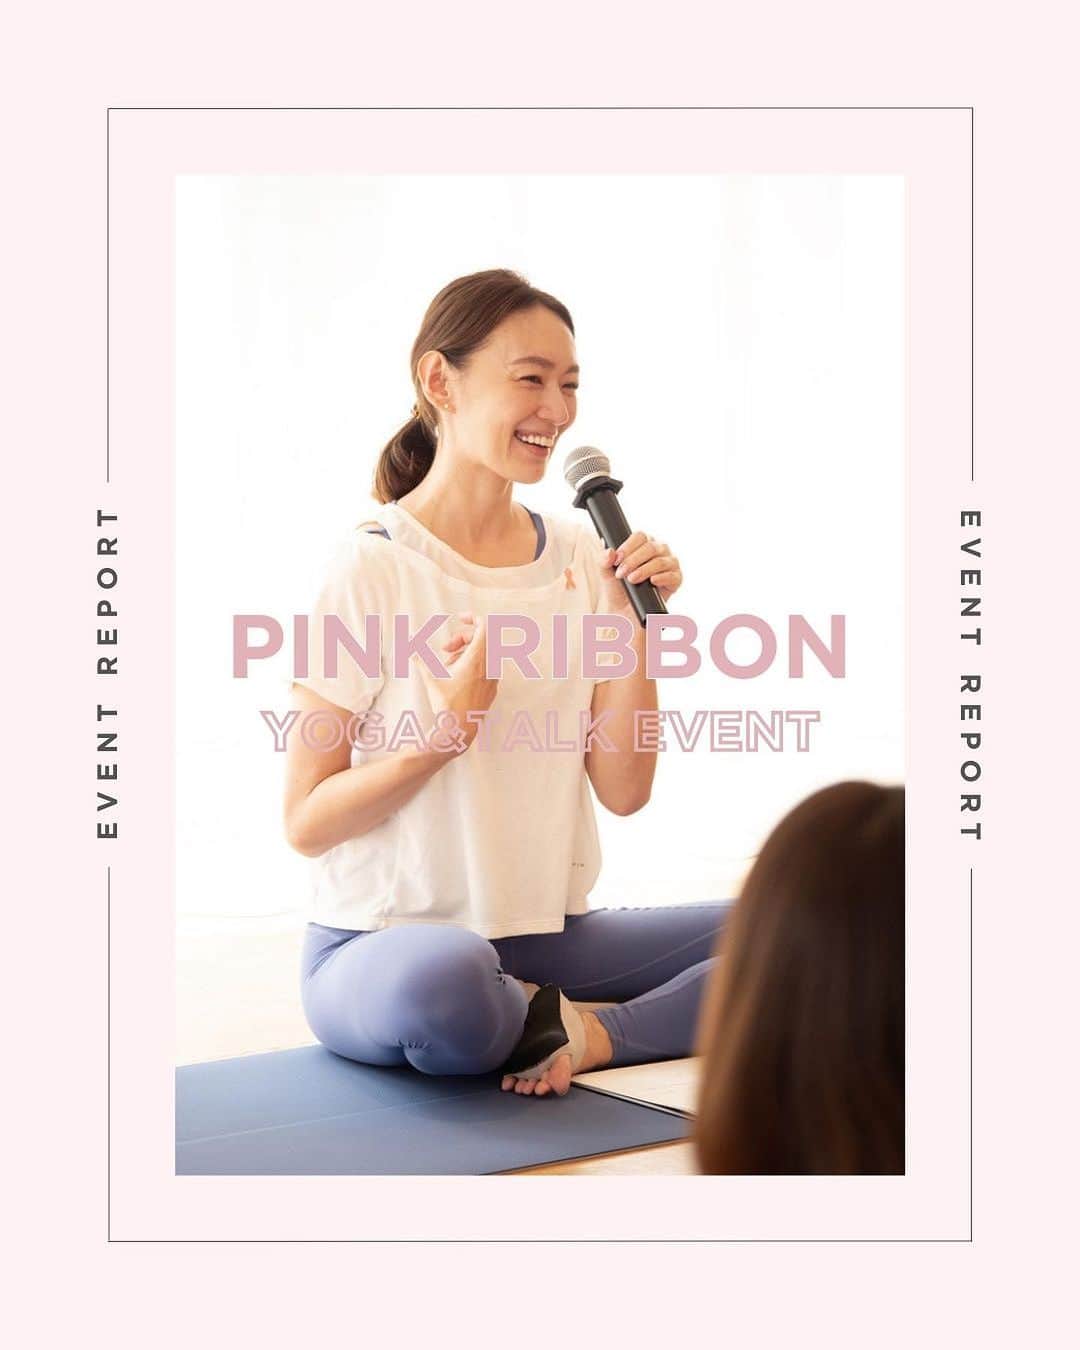 DANSKIN Japanのインスタグラム：「【EVENT REPORT】PINK RIBBON  ピンクリボン月間がスタートした10月1日にユーザーに向けたマインドフルネスヨガ＆ピンクリボントークイベントを開催しました。  登壇したのは、ダンスキンアンバサダーであり、自らも乳がんを経験し、ピンクリボンアドバイザーとしても活動するヨガインストラクターの木田まみさん @mami_maulea   「乳がんに関しての知識を正しく深め、まずはご自身の身体に目を向け、ケアしながら、自分自身でもわからないことがあったら検診に行く。その大切さを伝えるきっかけになったらいいなと思っています」と前置きし、まずはたっぷり1時間、約30人のダンスキンユーザーとともに、マインドフルネスヨガを行いました。  ヨガのあとはピンクリボントーク。社内啓発セミナーでも詳しくお話ししてくれた木田さん自身の経験を交えながら、参加者から事前に寄せられた質問に答えていきました。  さまざまな質問があったなかで、「家族の心構えやサポート、やってはいけないことを伺いたい」という、妻が乳がんを罹患中という男性からの質問には、「その意識だけで心強い」と話しながら、免疫力が低下している術後の体温調節の難しさに触れ、「温度調節を気にかけてくれたり、クーラーが効いているスーパーでの買い物を代わってくれたりすると、とても助かります」と具体的なアドバイスも。  また、データを挙げながら運動ががん予防の一助になることや、セルフチェックの方法、食事や睡眠の重要性を話しながら「今の自分が未来の自分を作るので、今日をきっかけに今を見直して大切にしてほしいです」と参加者に伝えていました。   日本人女性の9人に1人が罹患するといわれている乳がん。自分の心身に意識を向け、食事や睡眠の見直し、運動習慣をつけるなど、まずはできることからヘルシーな人生を送っていきましょう。ダンスキンはいつもその伴走者でありたいと考えています。  レポート全文はダンスキンBLOGよりご覧いただけます。 また、ピンクリボン特集をダンスキンブランドサイトで公開中です。ぜひご覧ください。  #danskin #danskinjapan #ダンスキン #こころとからだ #わたしを生きる #ピンクリボン #おっぱいと向き合おう」